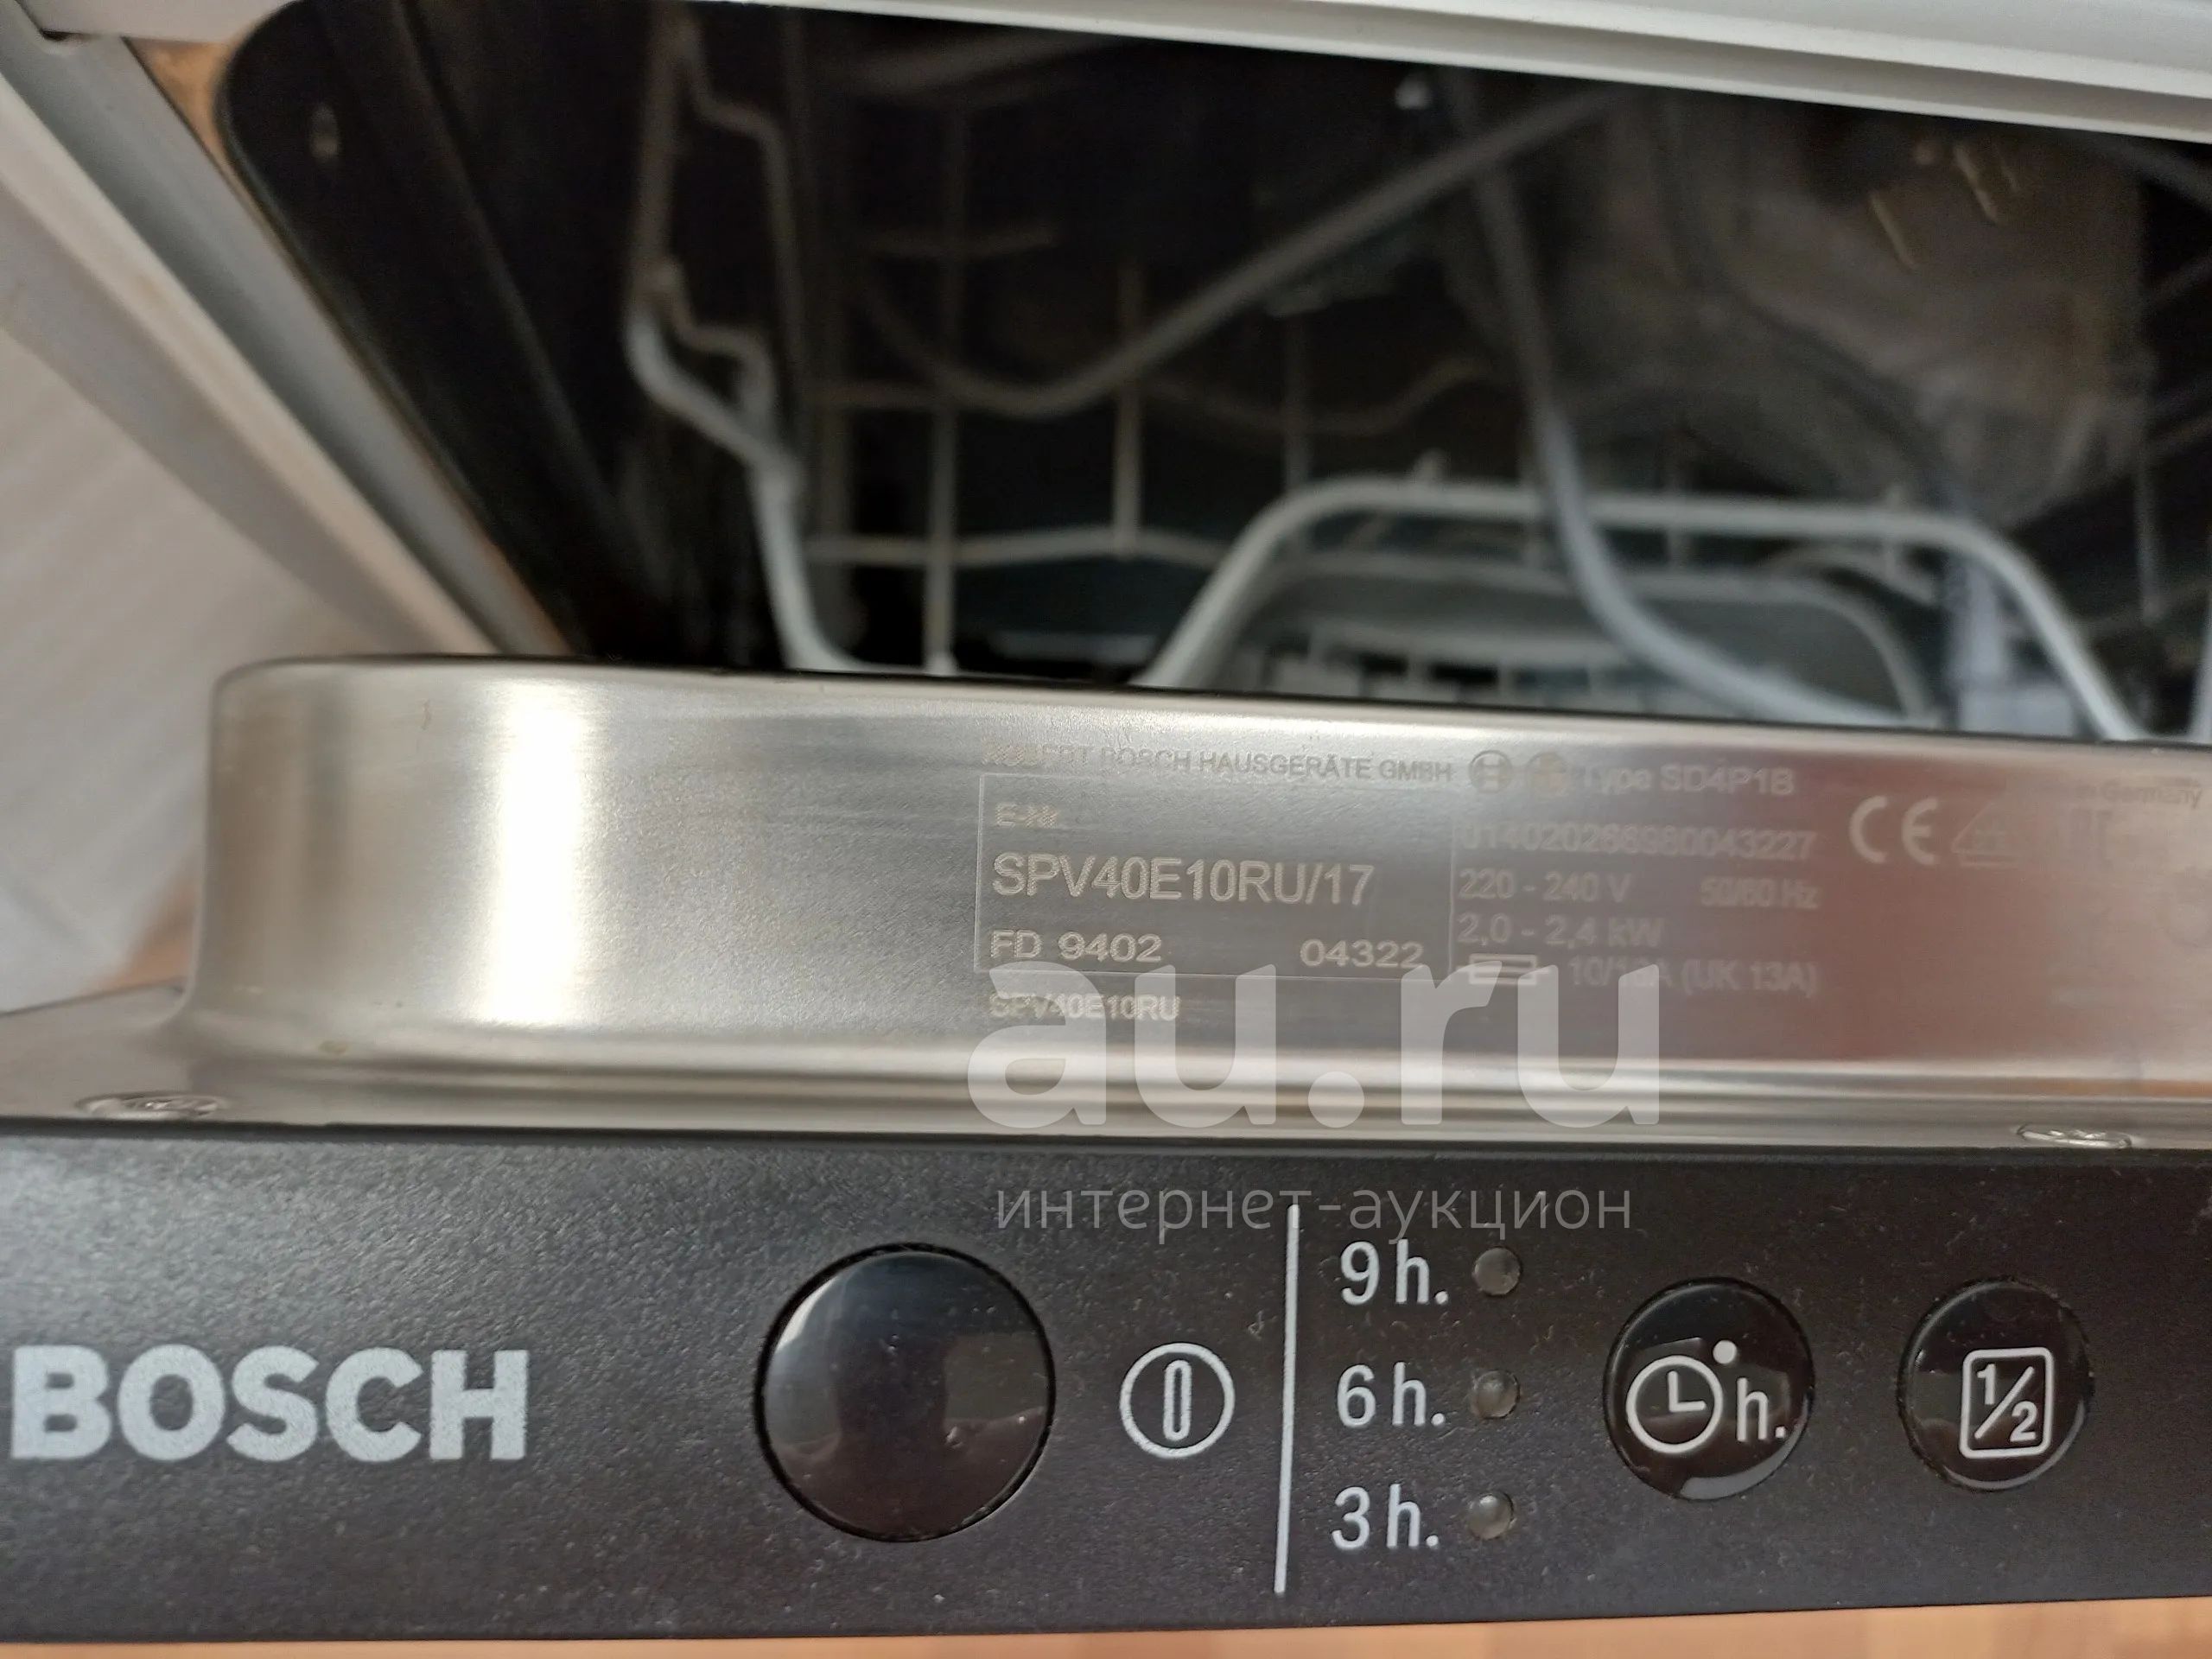 Посудомойка бош мигает. Мигает краник на посудомойке Bosch. Узкая посудомойка бош управление. Светится краник в посудомойке бош. Посудомойка Bosch мигает индикатор щетка и нагрев.